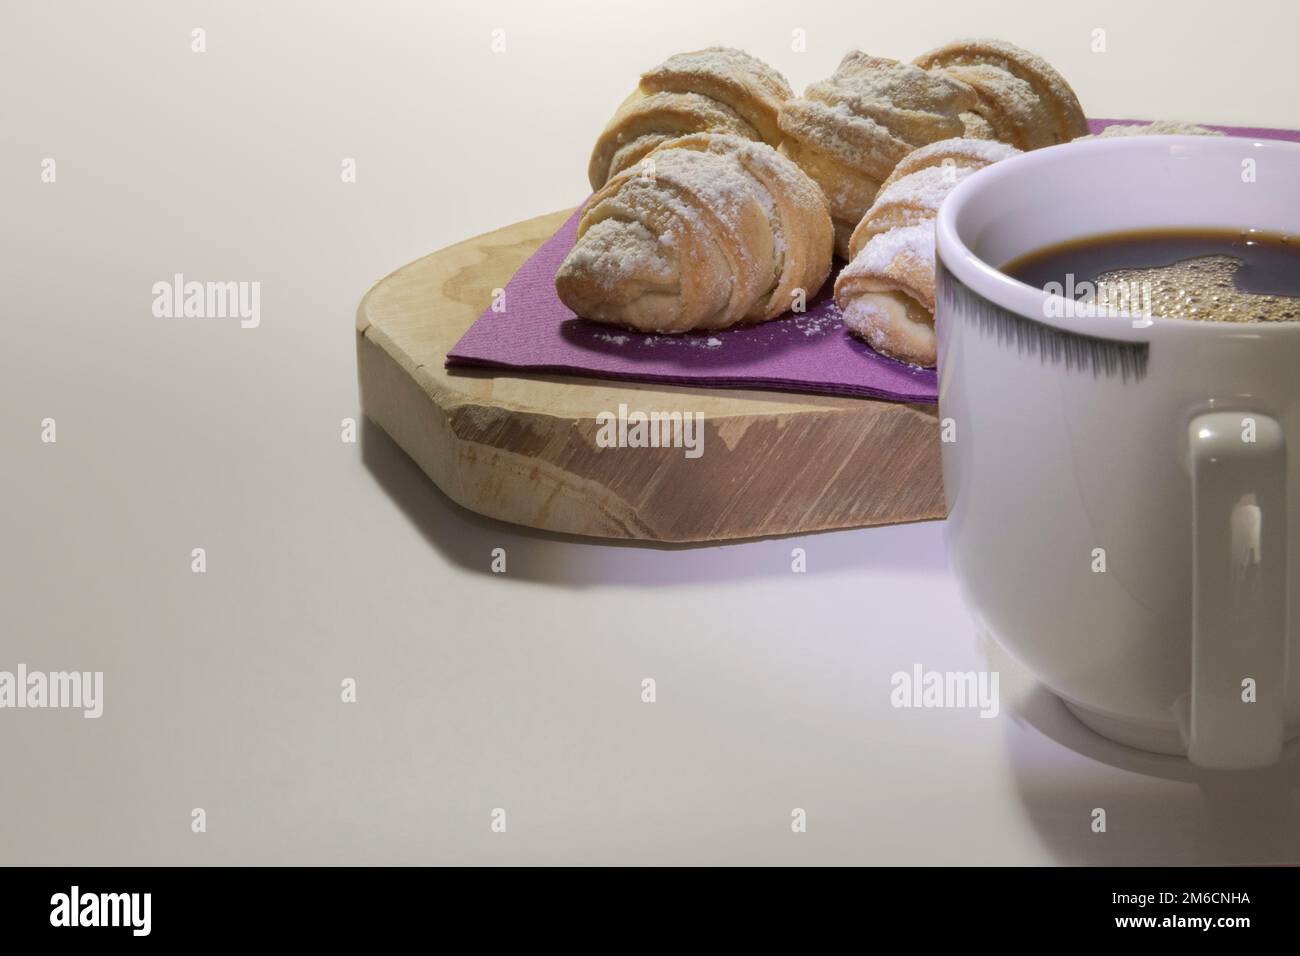 Brioches sur une serviette violette, tasse de café sur un support en bois fond blanc. Banque D'Images